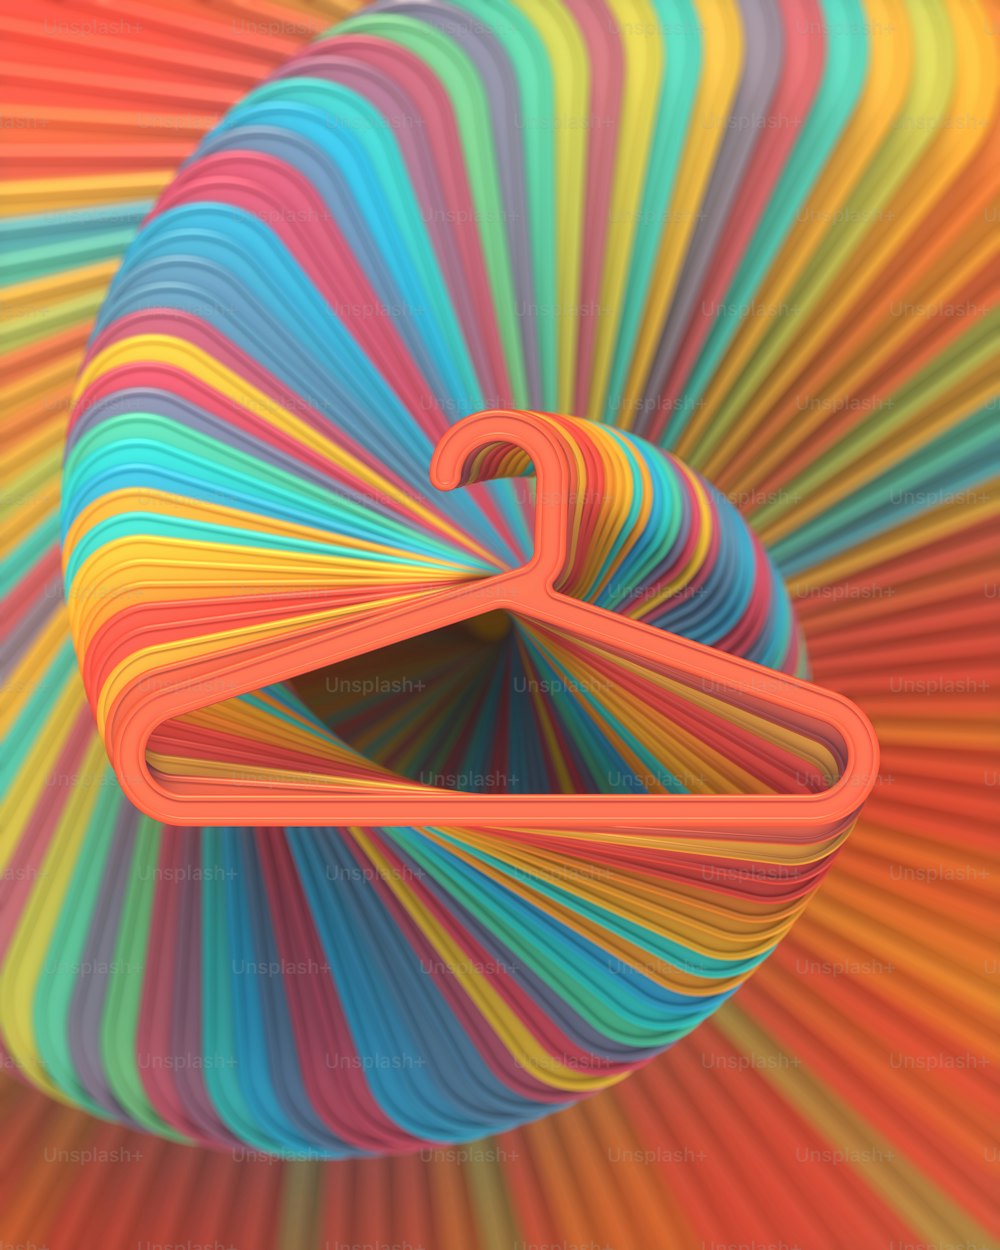 Modelo moderno com espiral torcida sem fim feita de cabides de plástico multicoloridos com um gradiente suave. Fundo moderno da moda. Estilo abstrato geométrico. Ilustração digital de renderização 3D